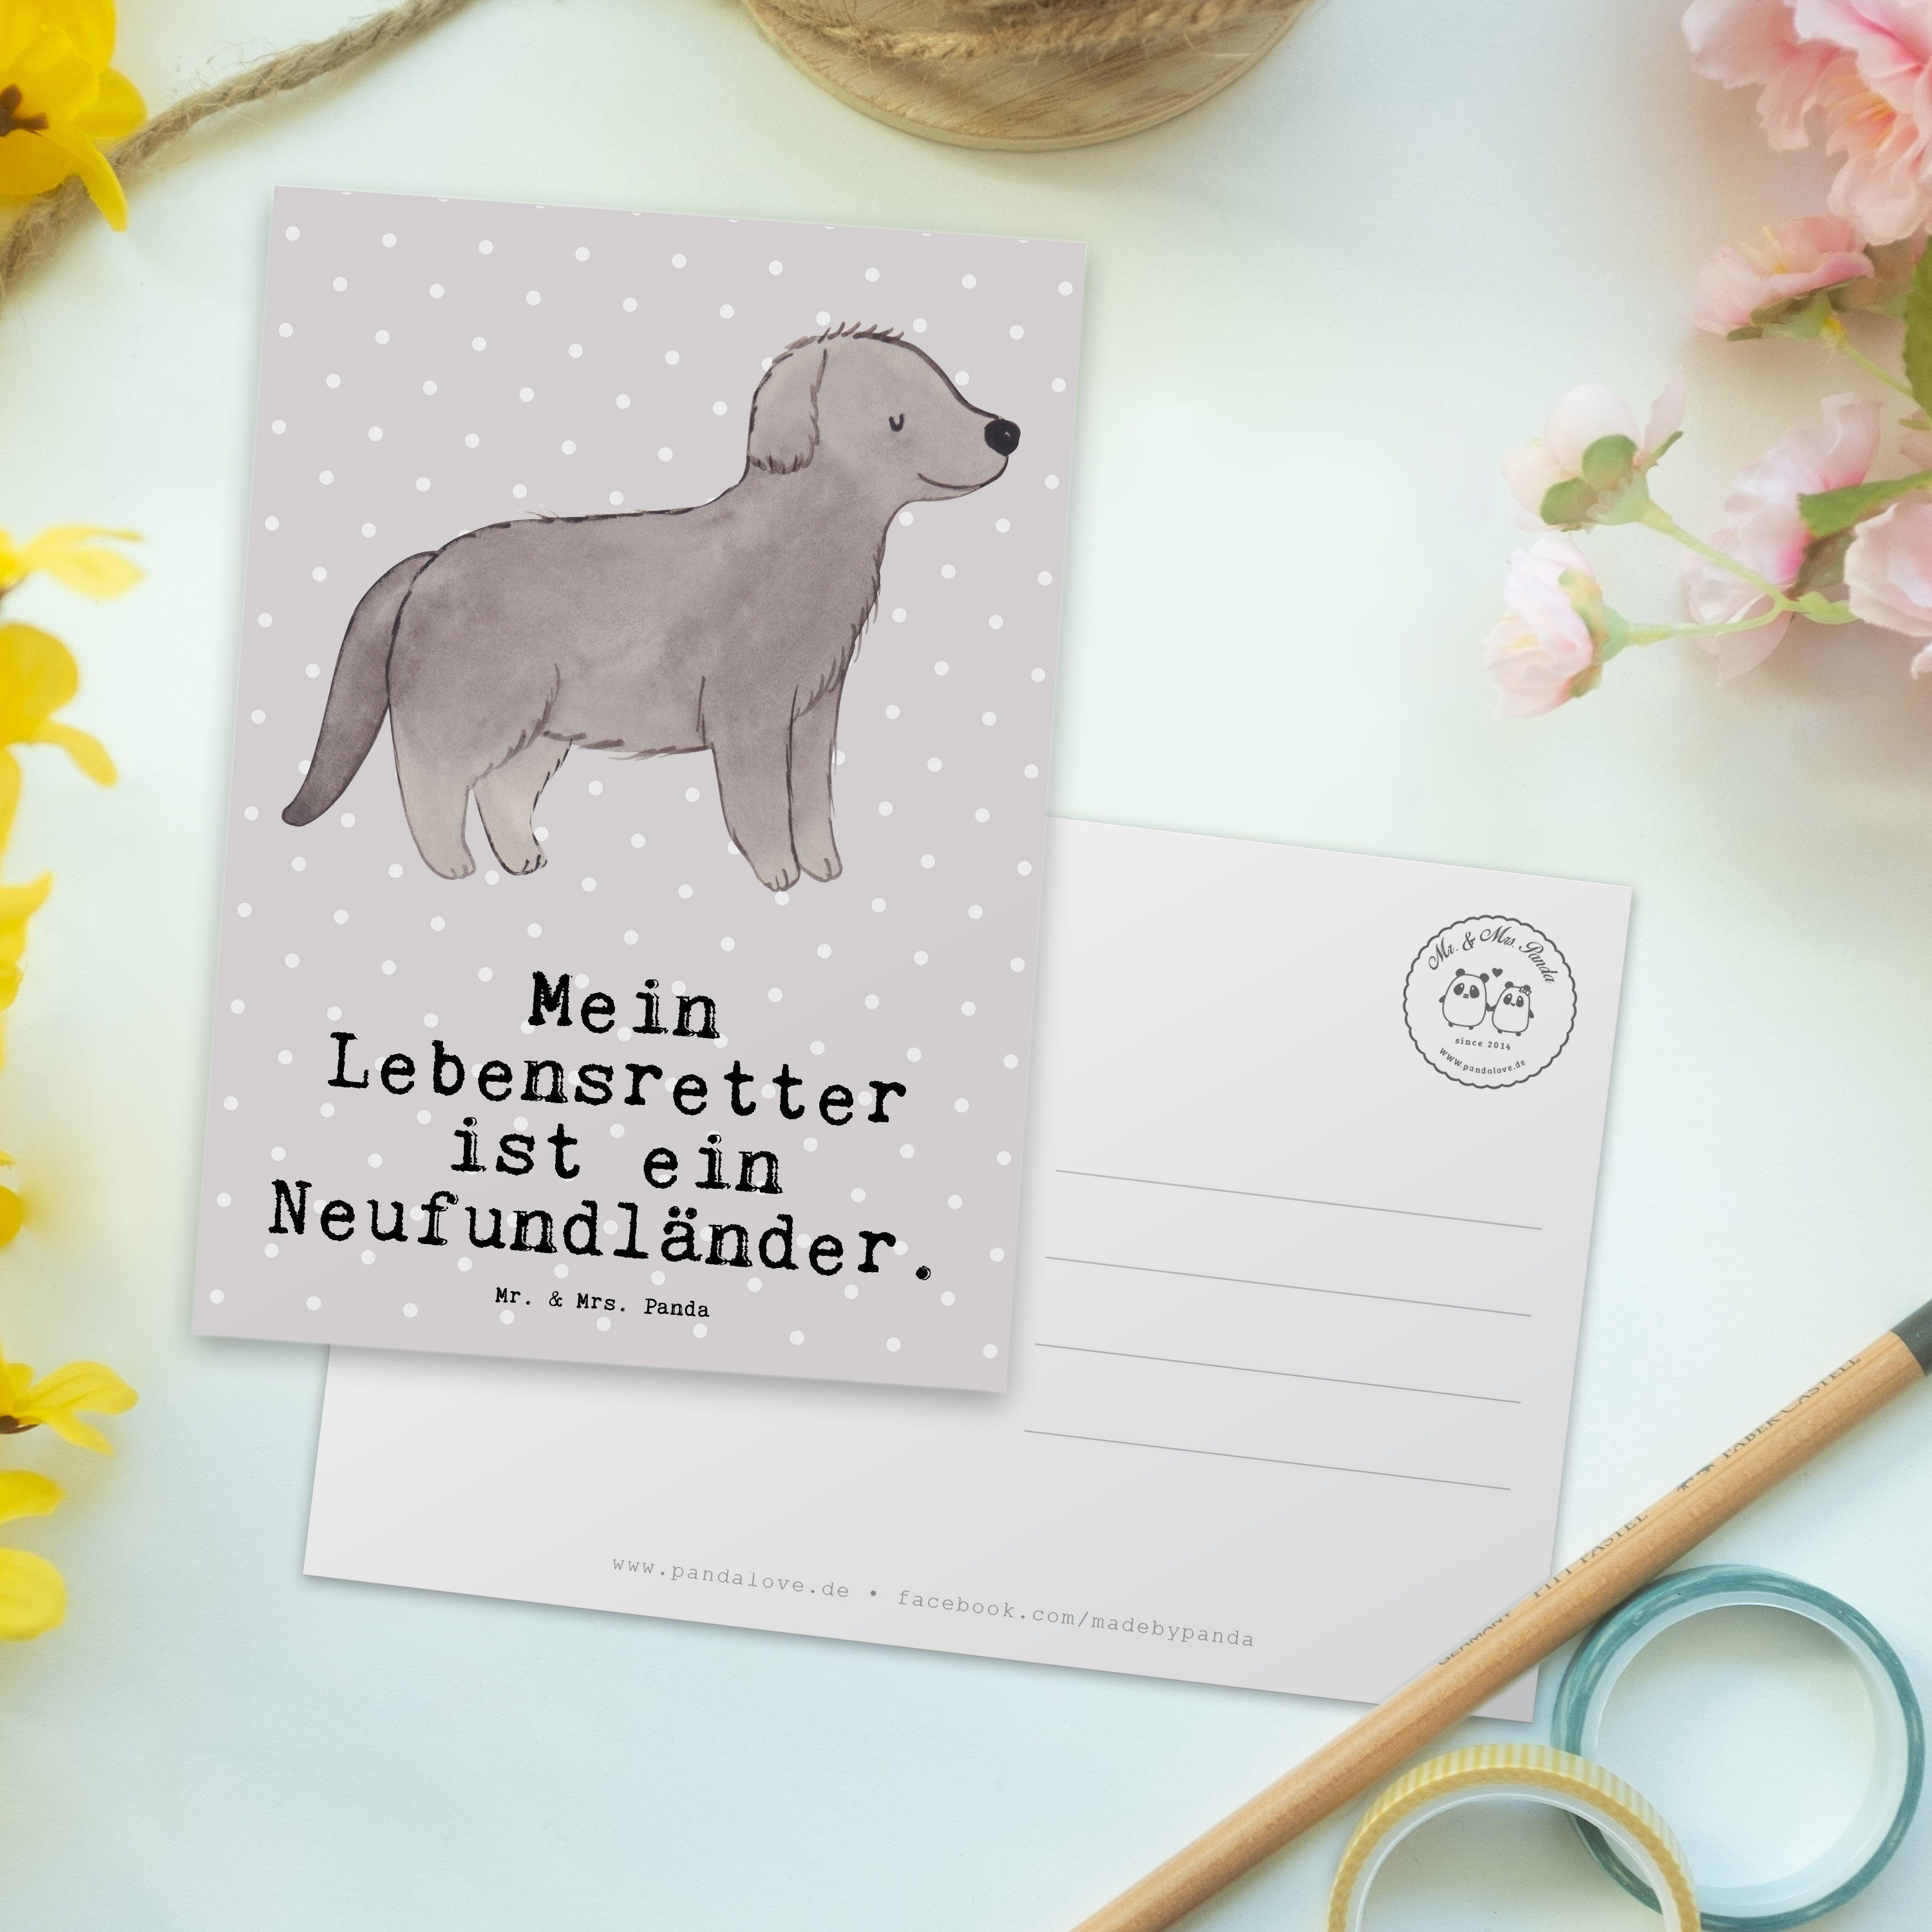 Mr. & Lebensretter Einladung, Geschenk, Grau Mrs. Panda - Hund Postkarte - Neufundländer Pastell